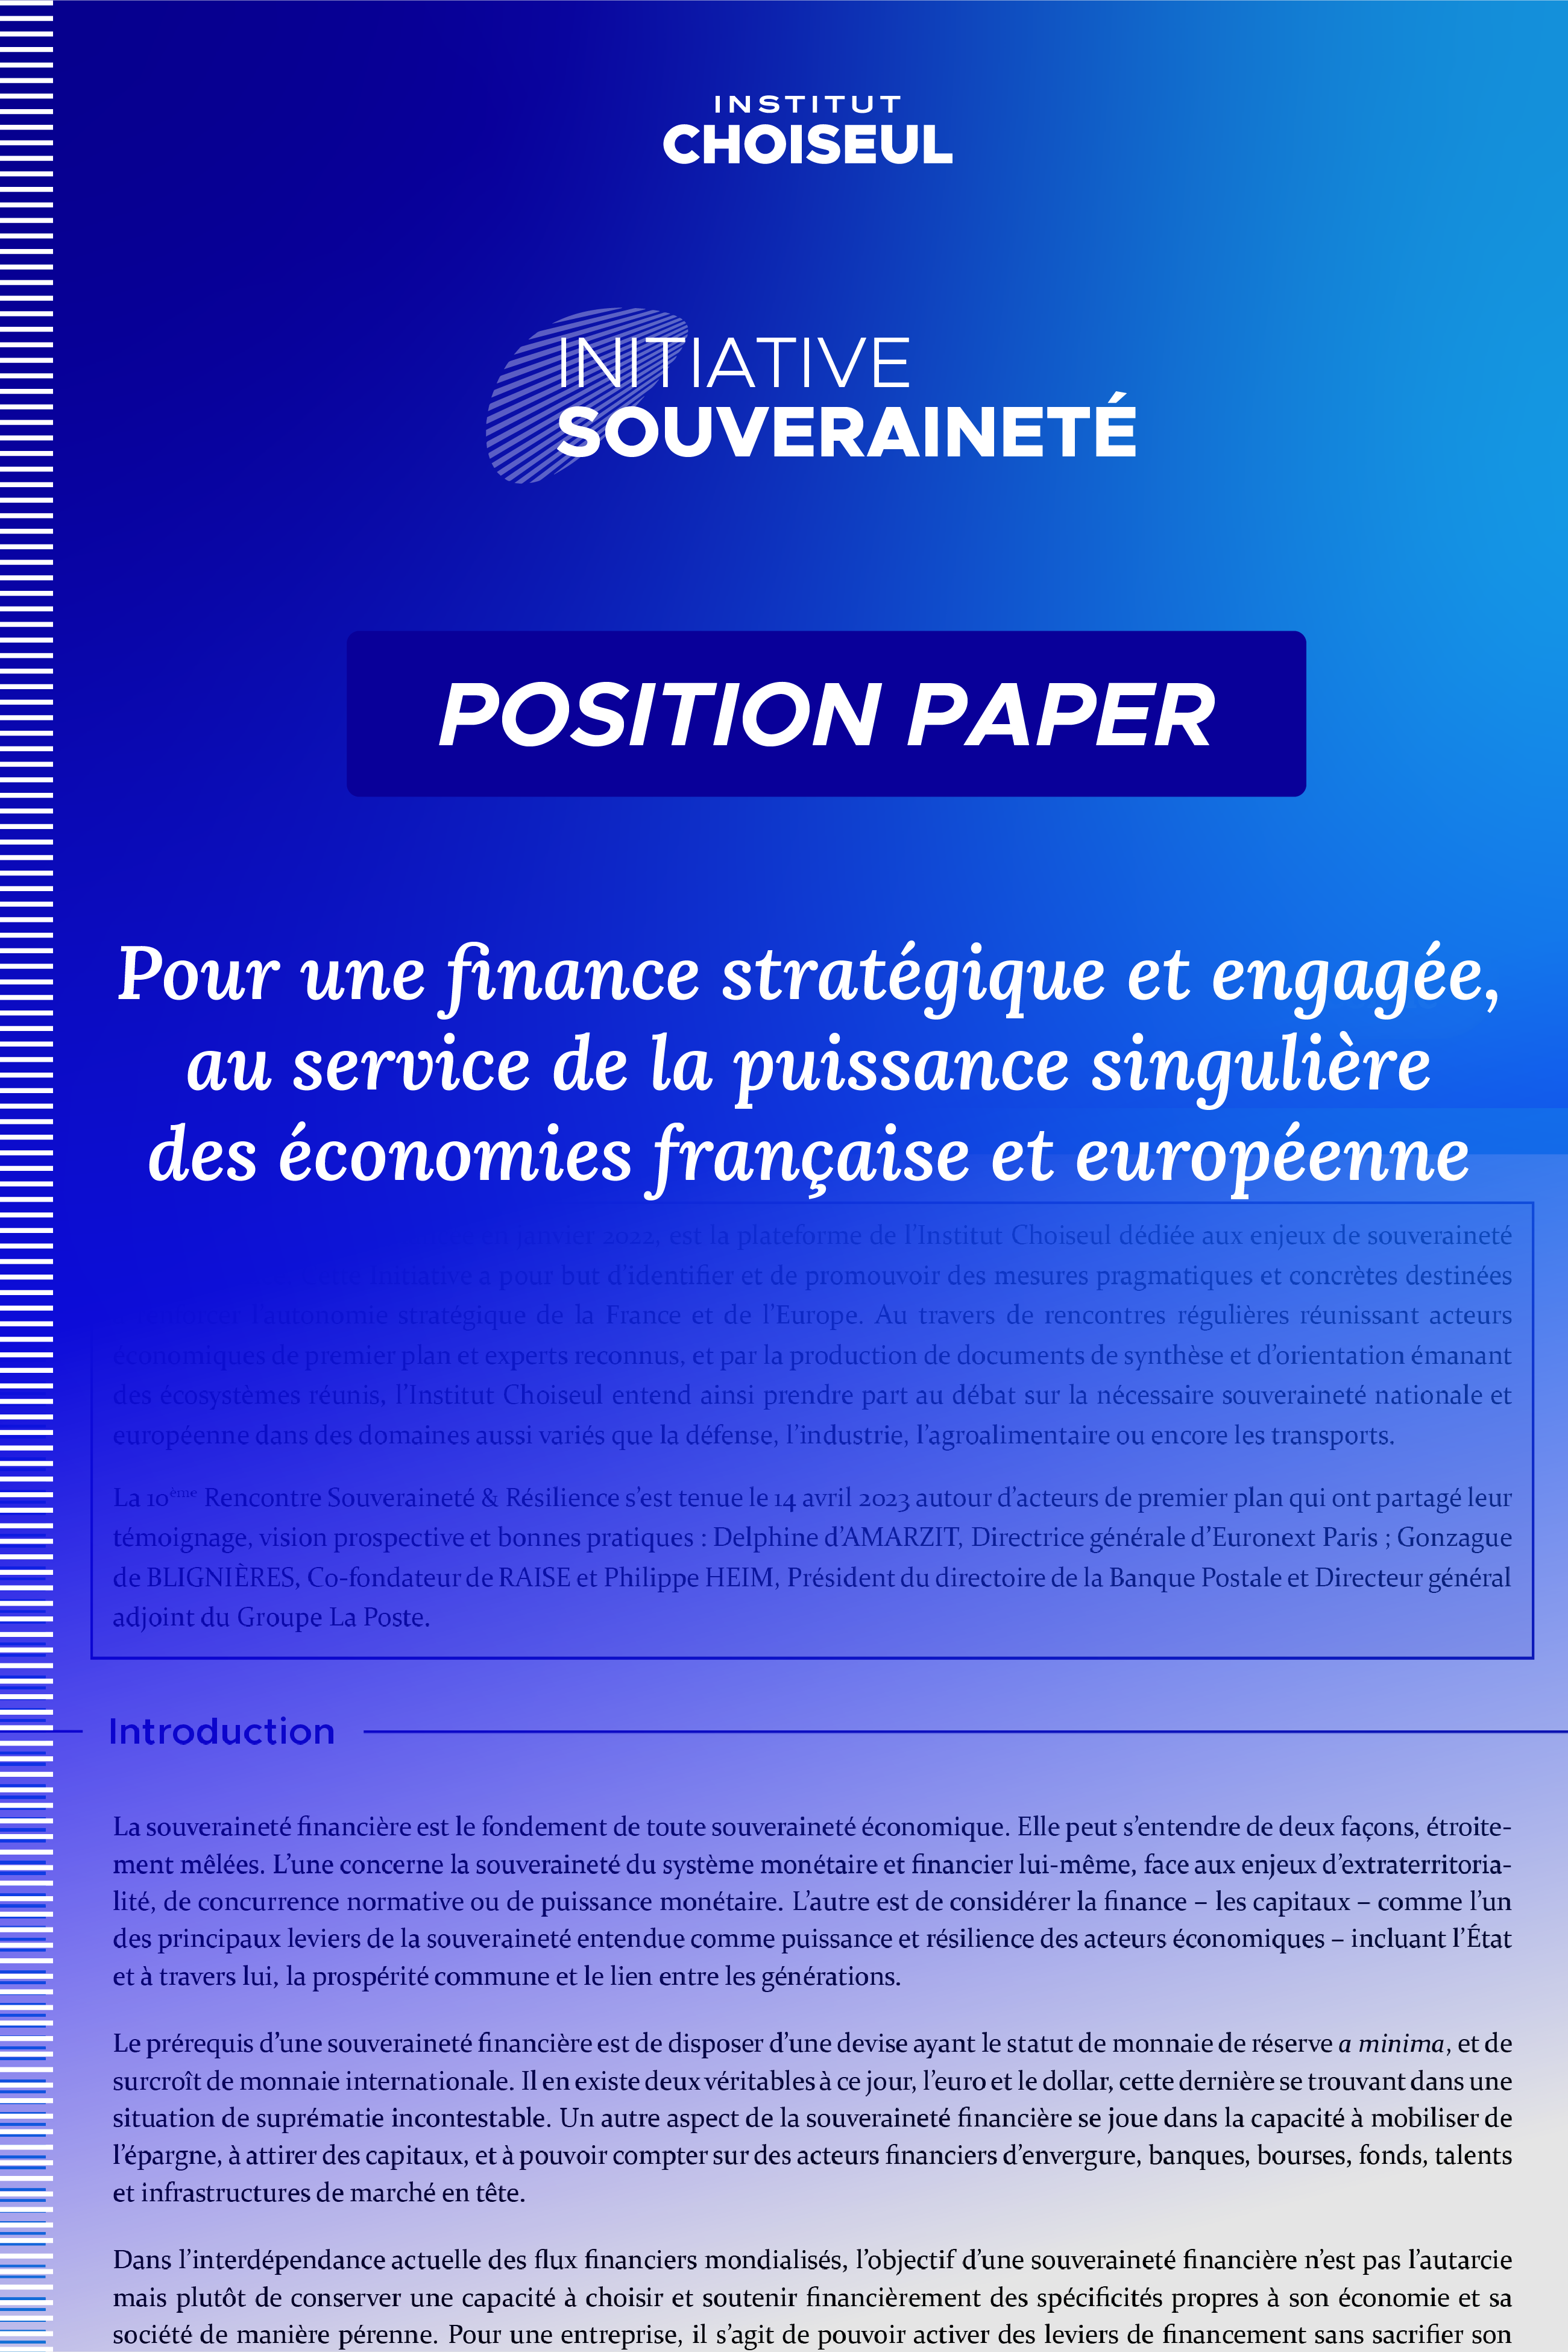 Pour une finance stratégique et engagée, au service de la puissance singulière des économies française et européenne